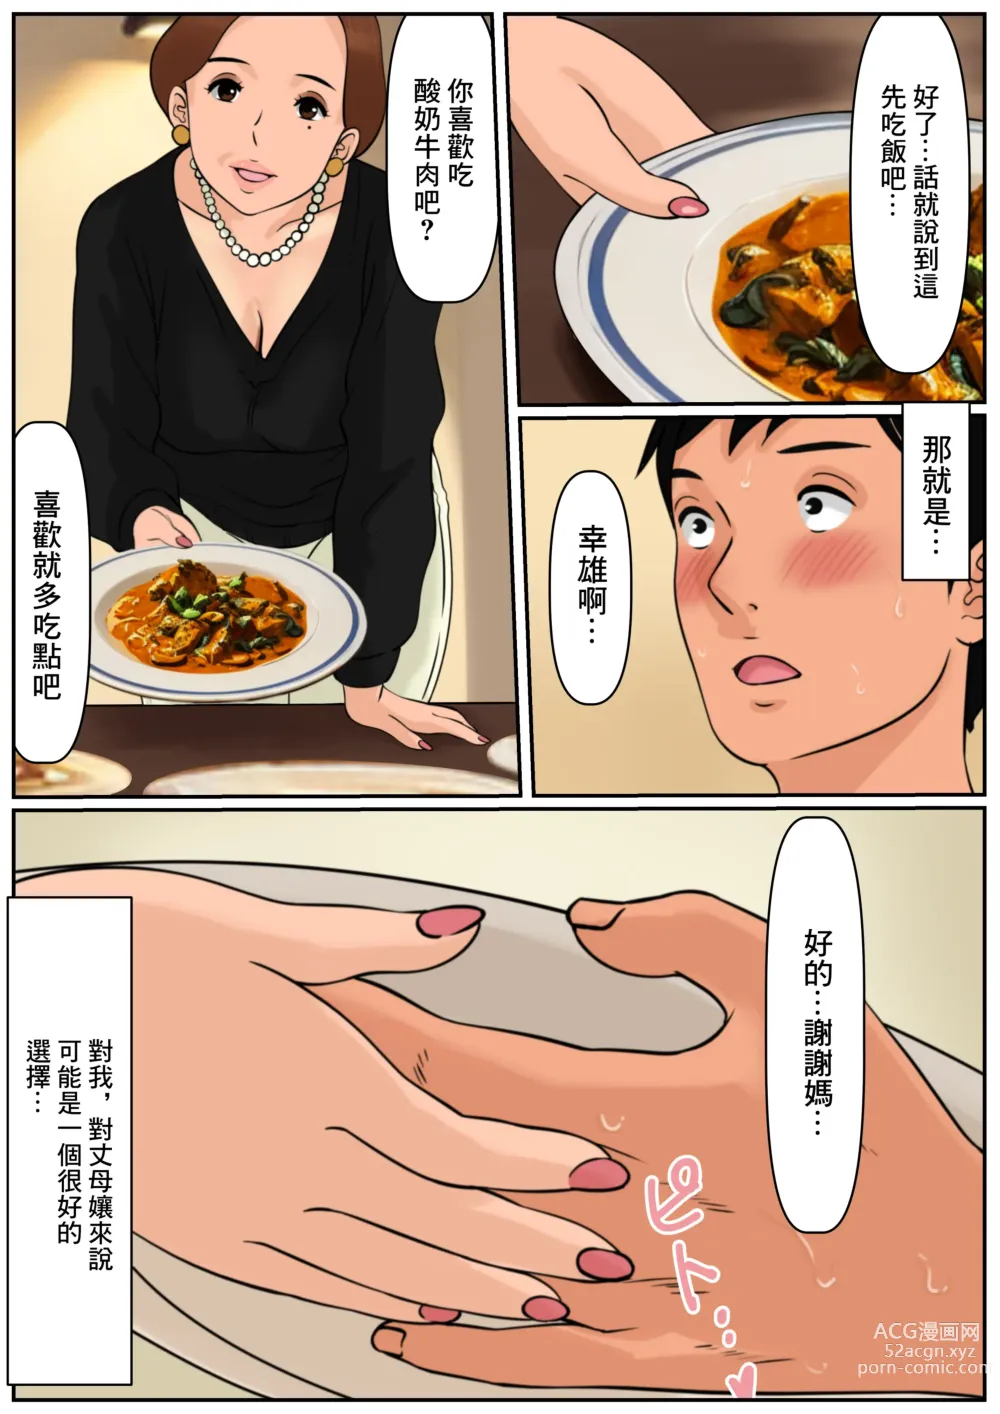 Page 8 of doujinshi 難道你是嫌棄我這個媽媽嗎?